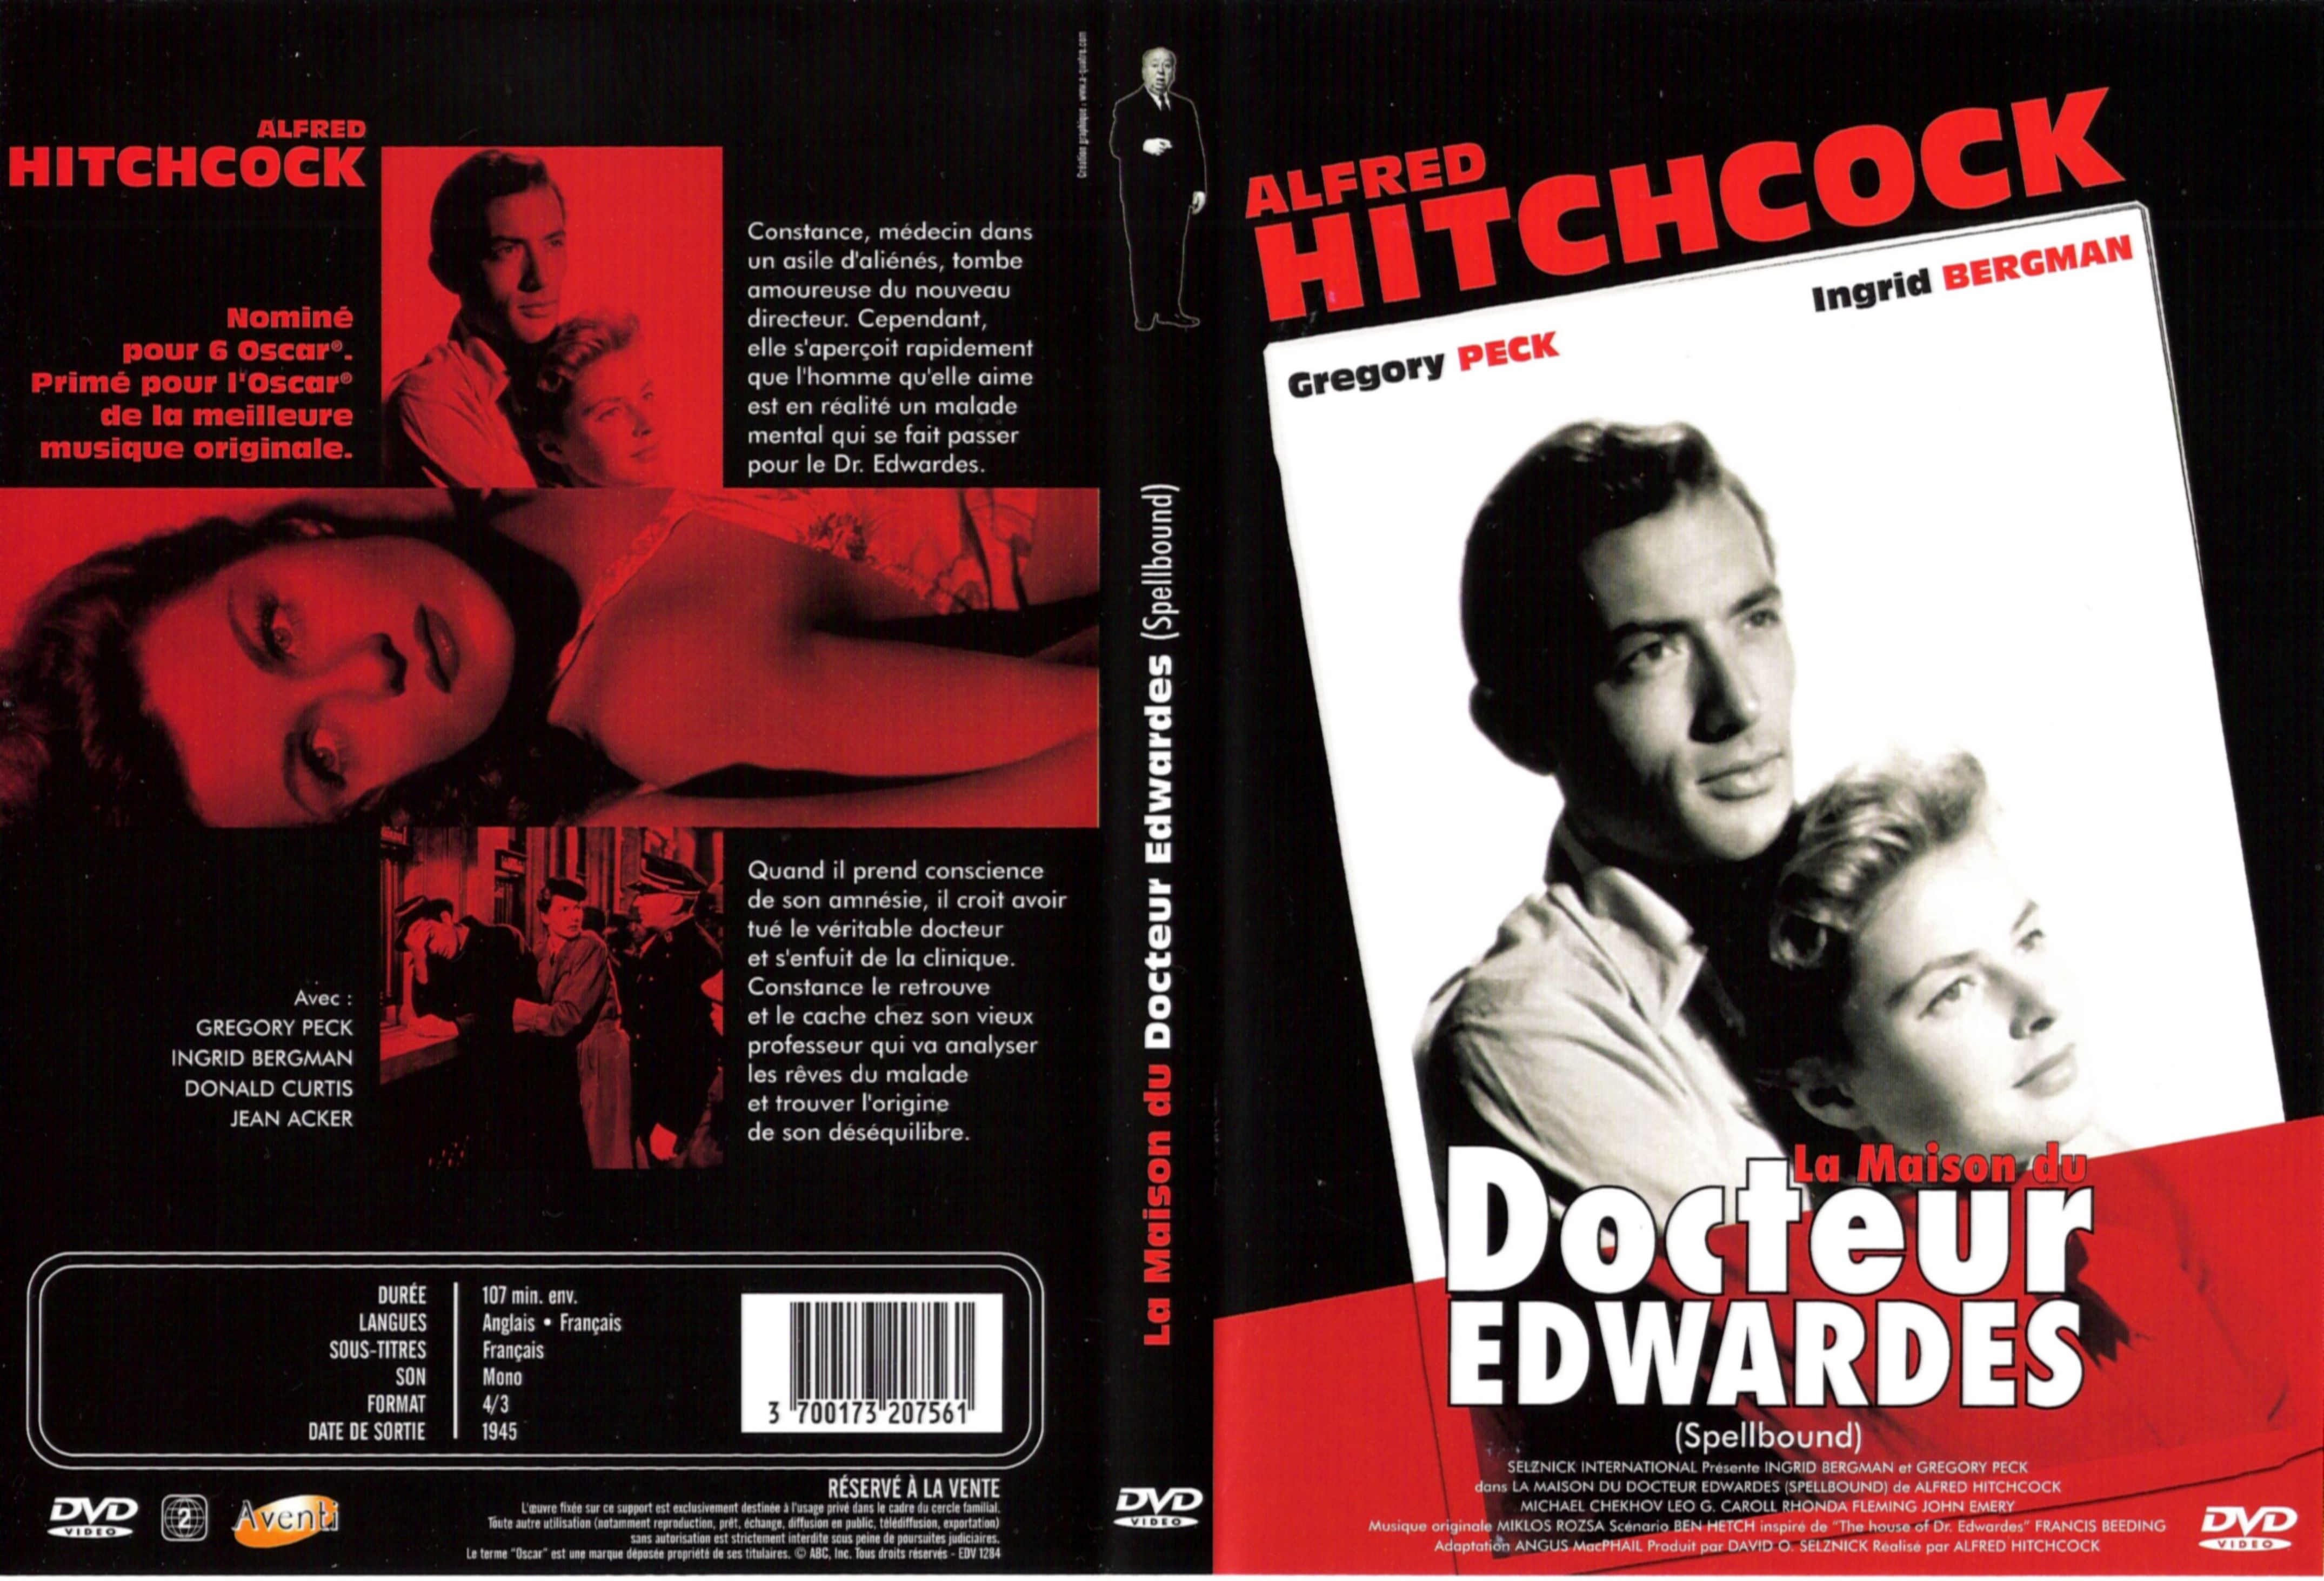 Jaquette DVD La maison du docteur Edwardes